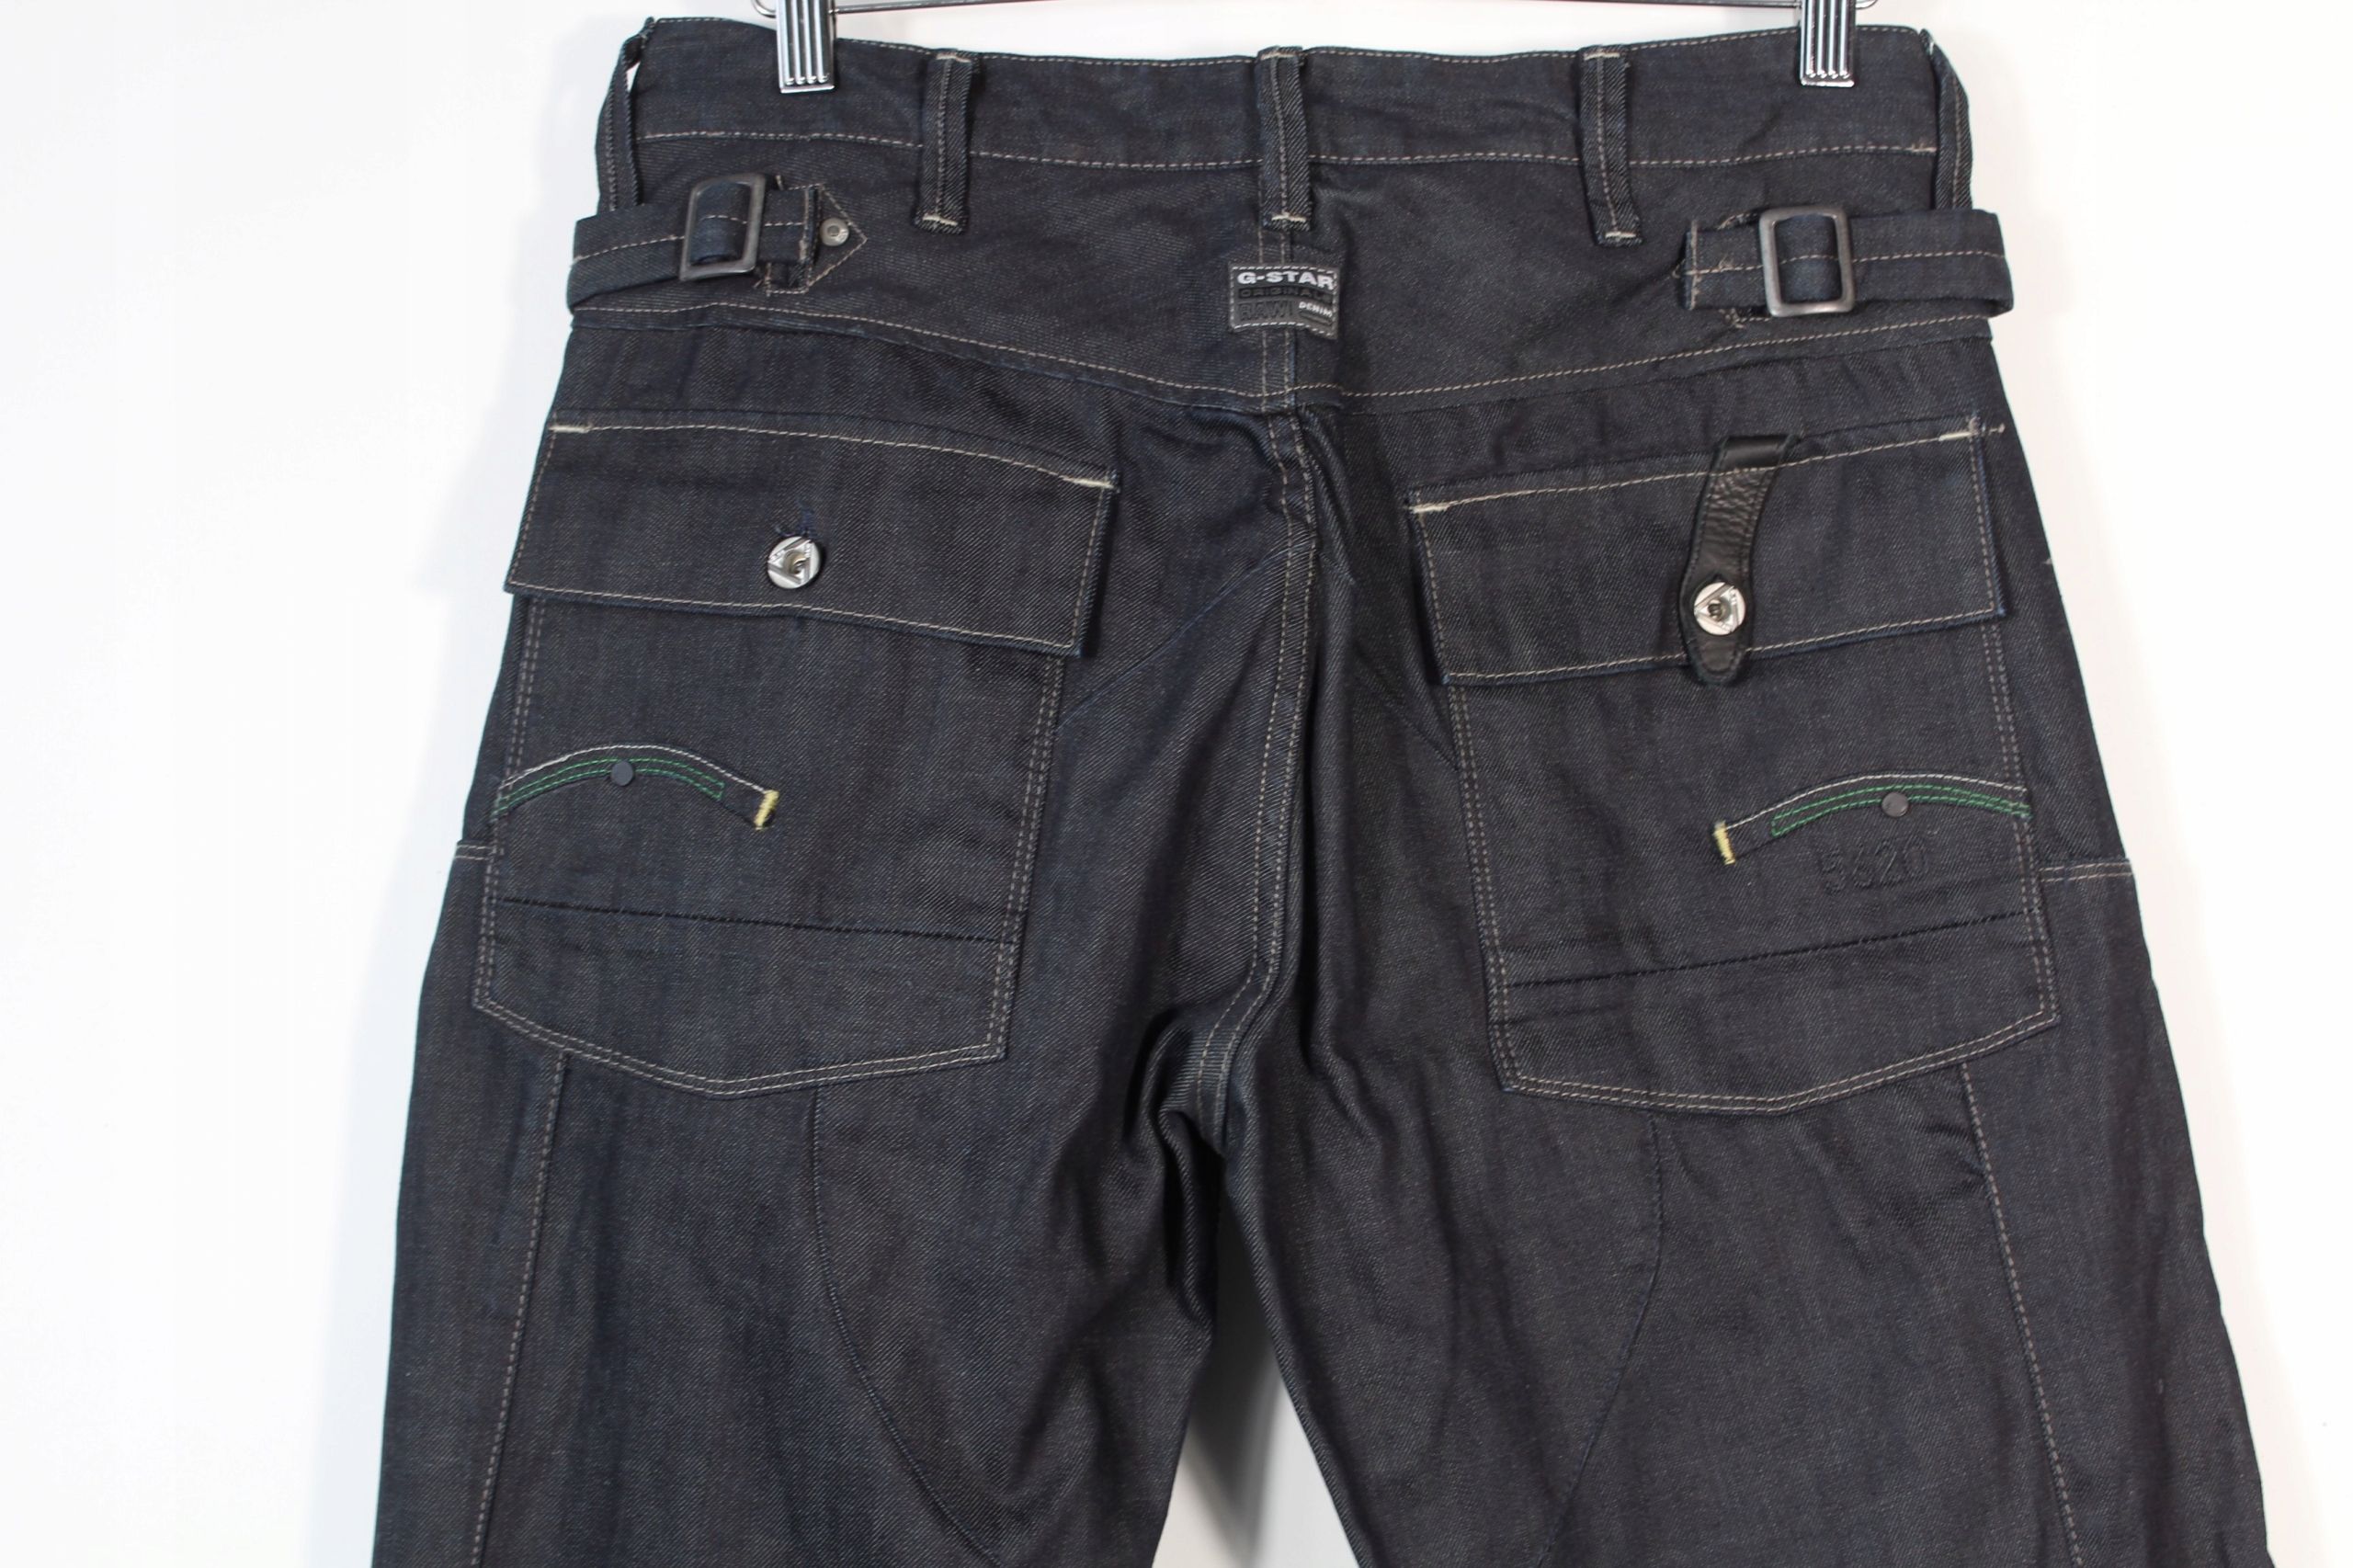 G-Star Raw 3301 Loose Spodnie Jeans W33 L36 Bdb